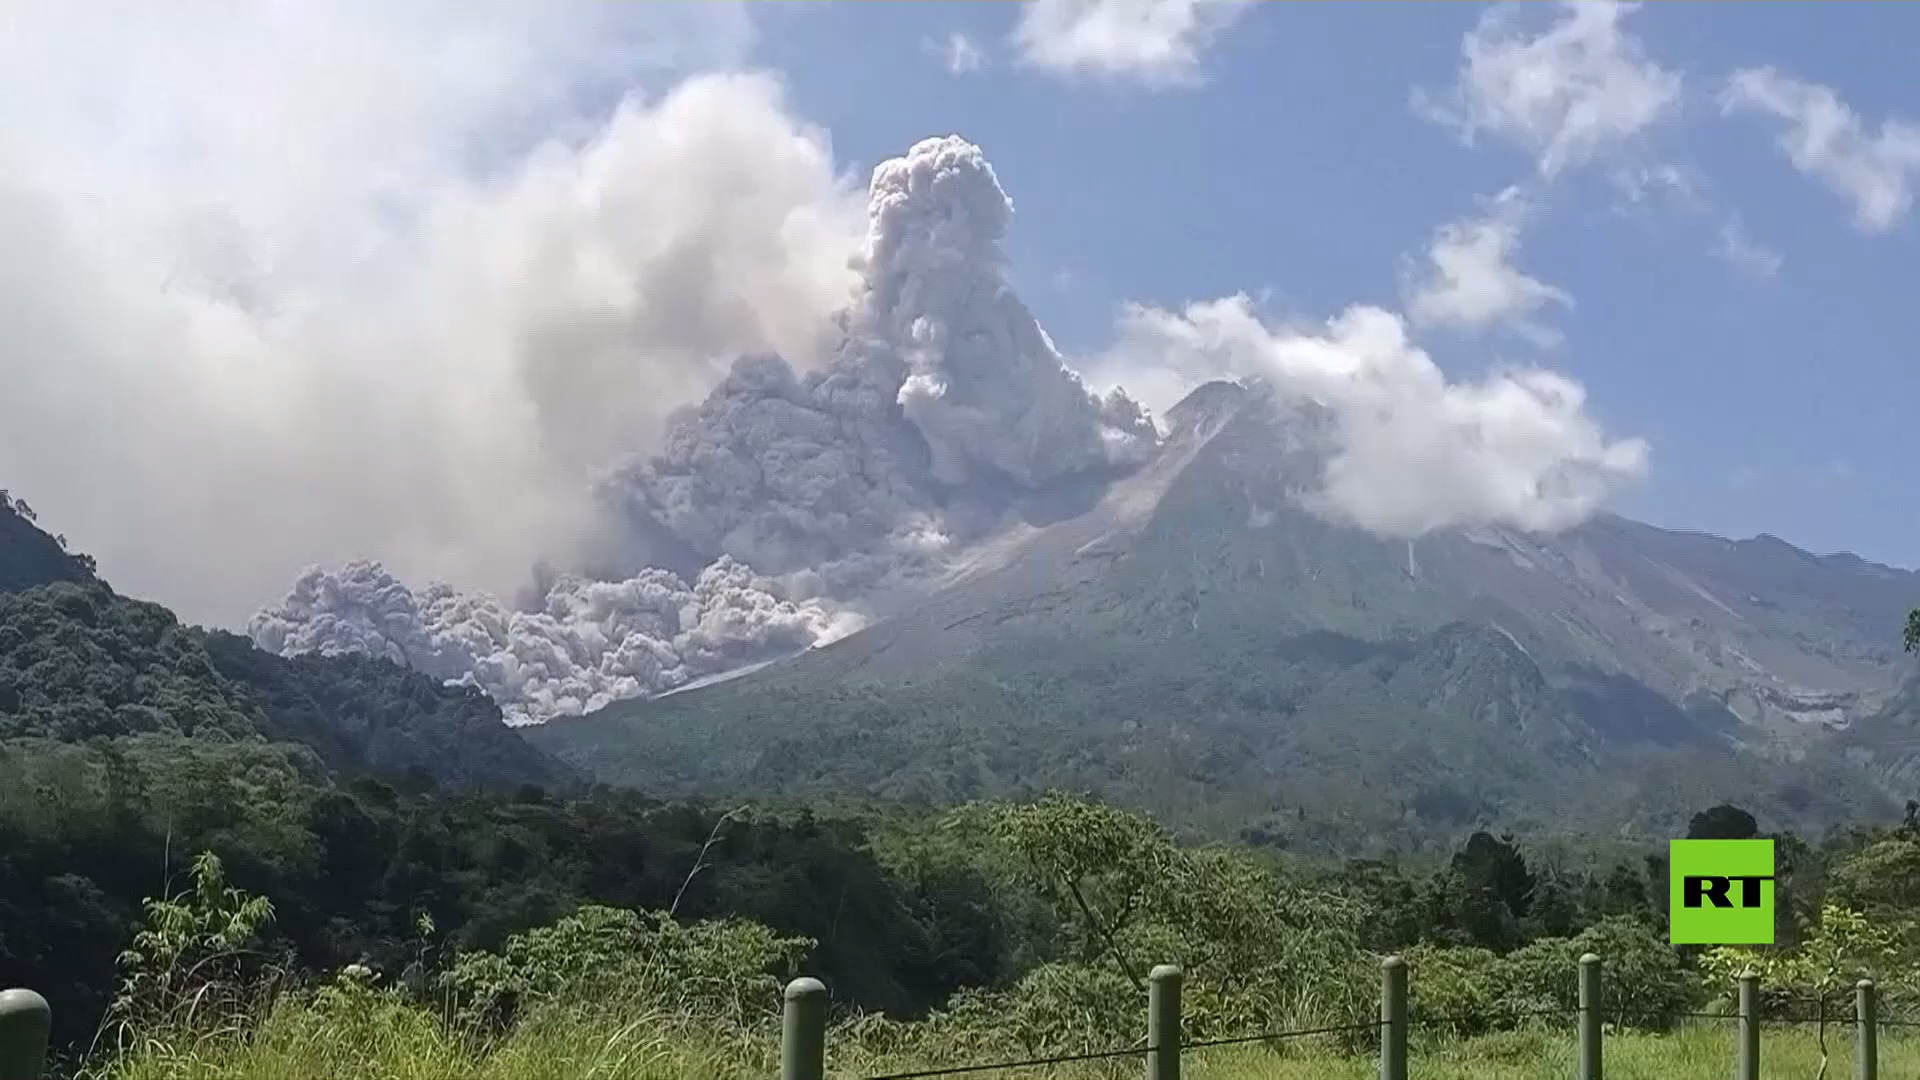 لحظات مرعبة لثوران بركان ميرابي في إندونيسيا (فيديو)